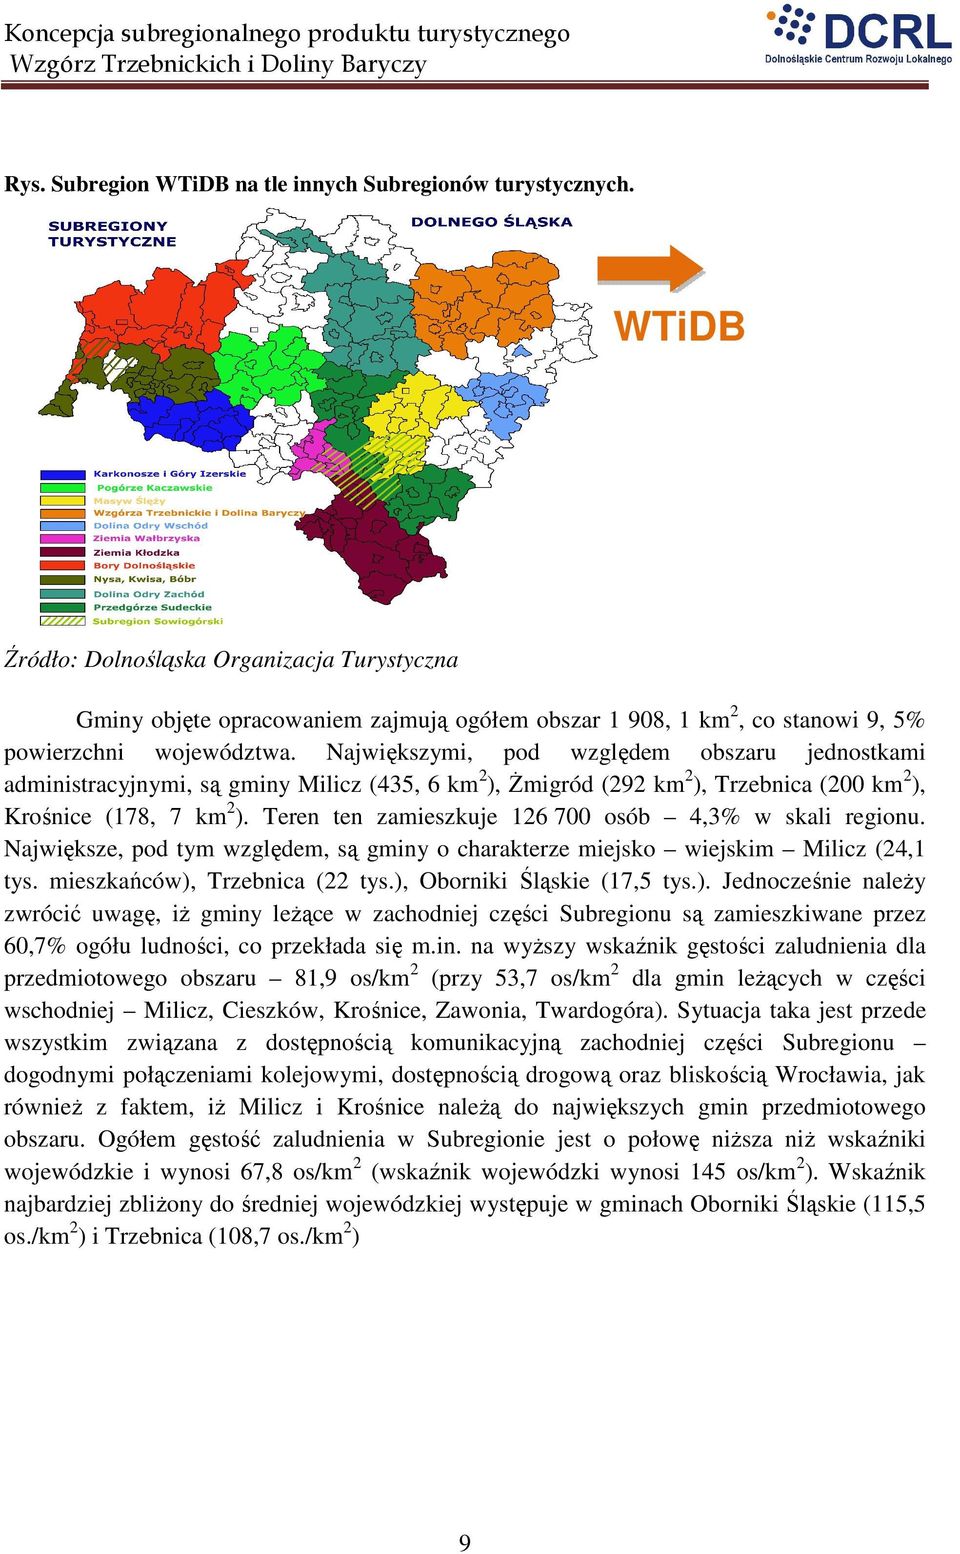 Największymi, pod względem obszaru jednostkami administracyjnymi, są gminy Milicz (435, 6 km 2 ), śmigród (292 km 2 ), Trzebnica (200 km 2 ), Krośnice (178, 7 km 2 ).